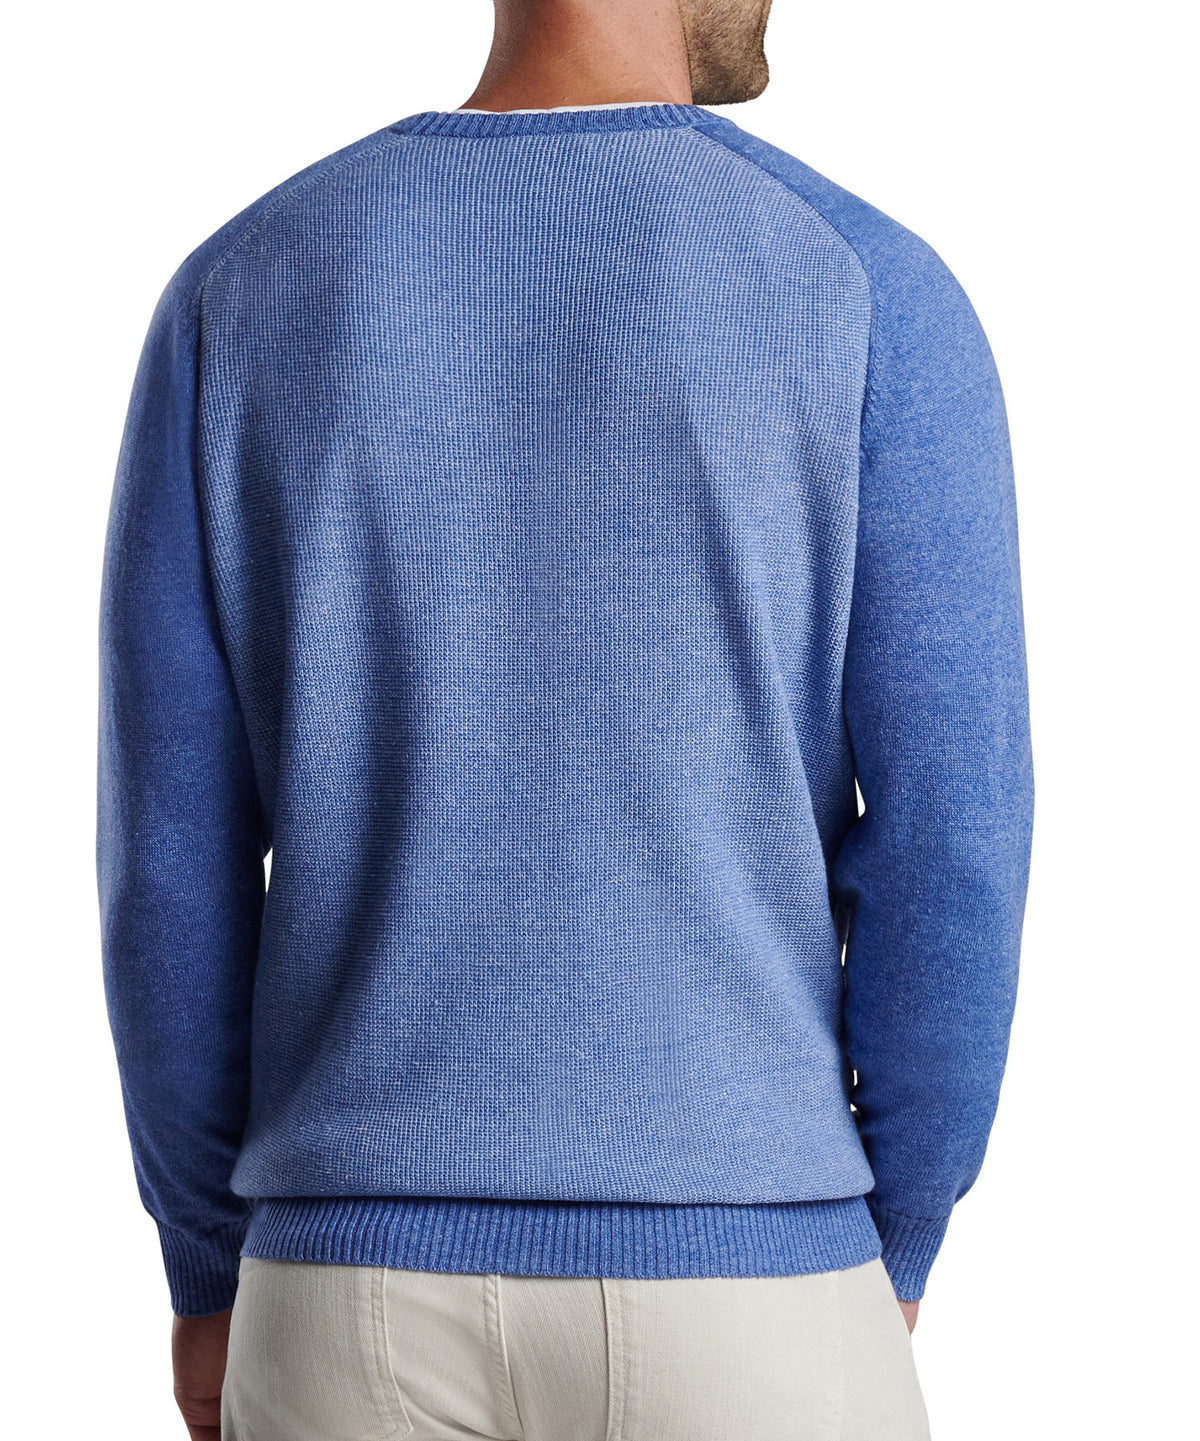 Peter Millar Stafford Crew Neck Sweater, Men's Big & Tall